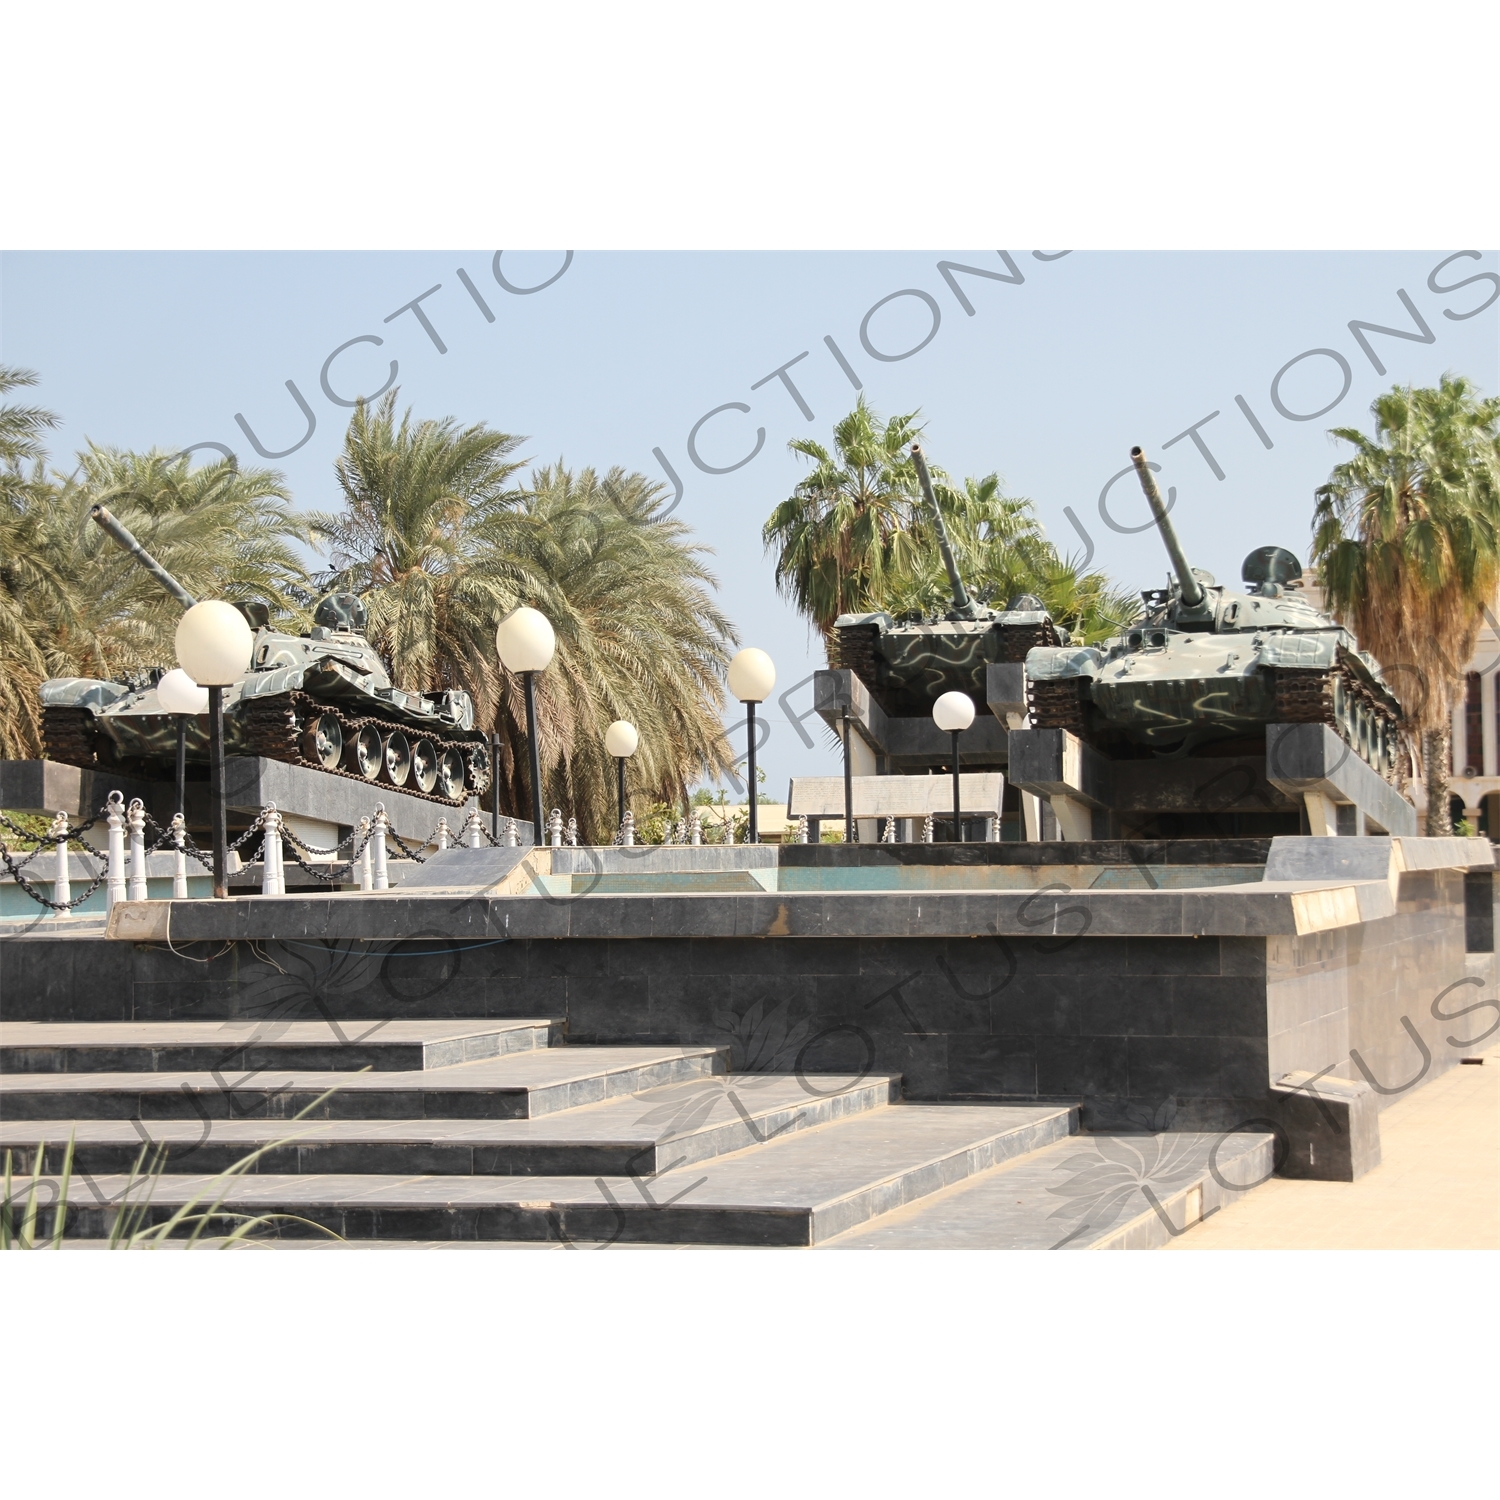 Tank Memorial in War Memory Square in Massawa